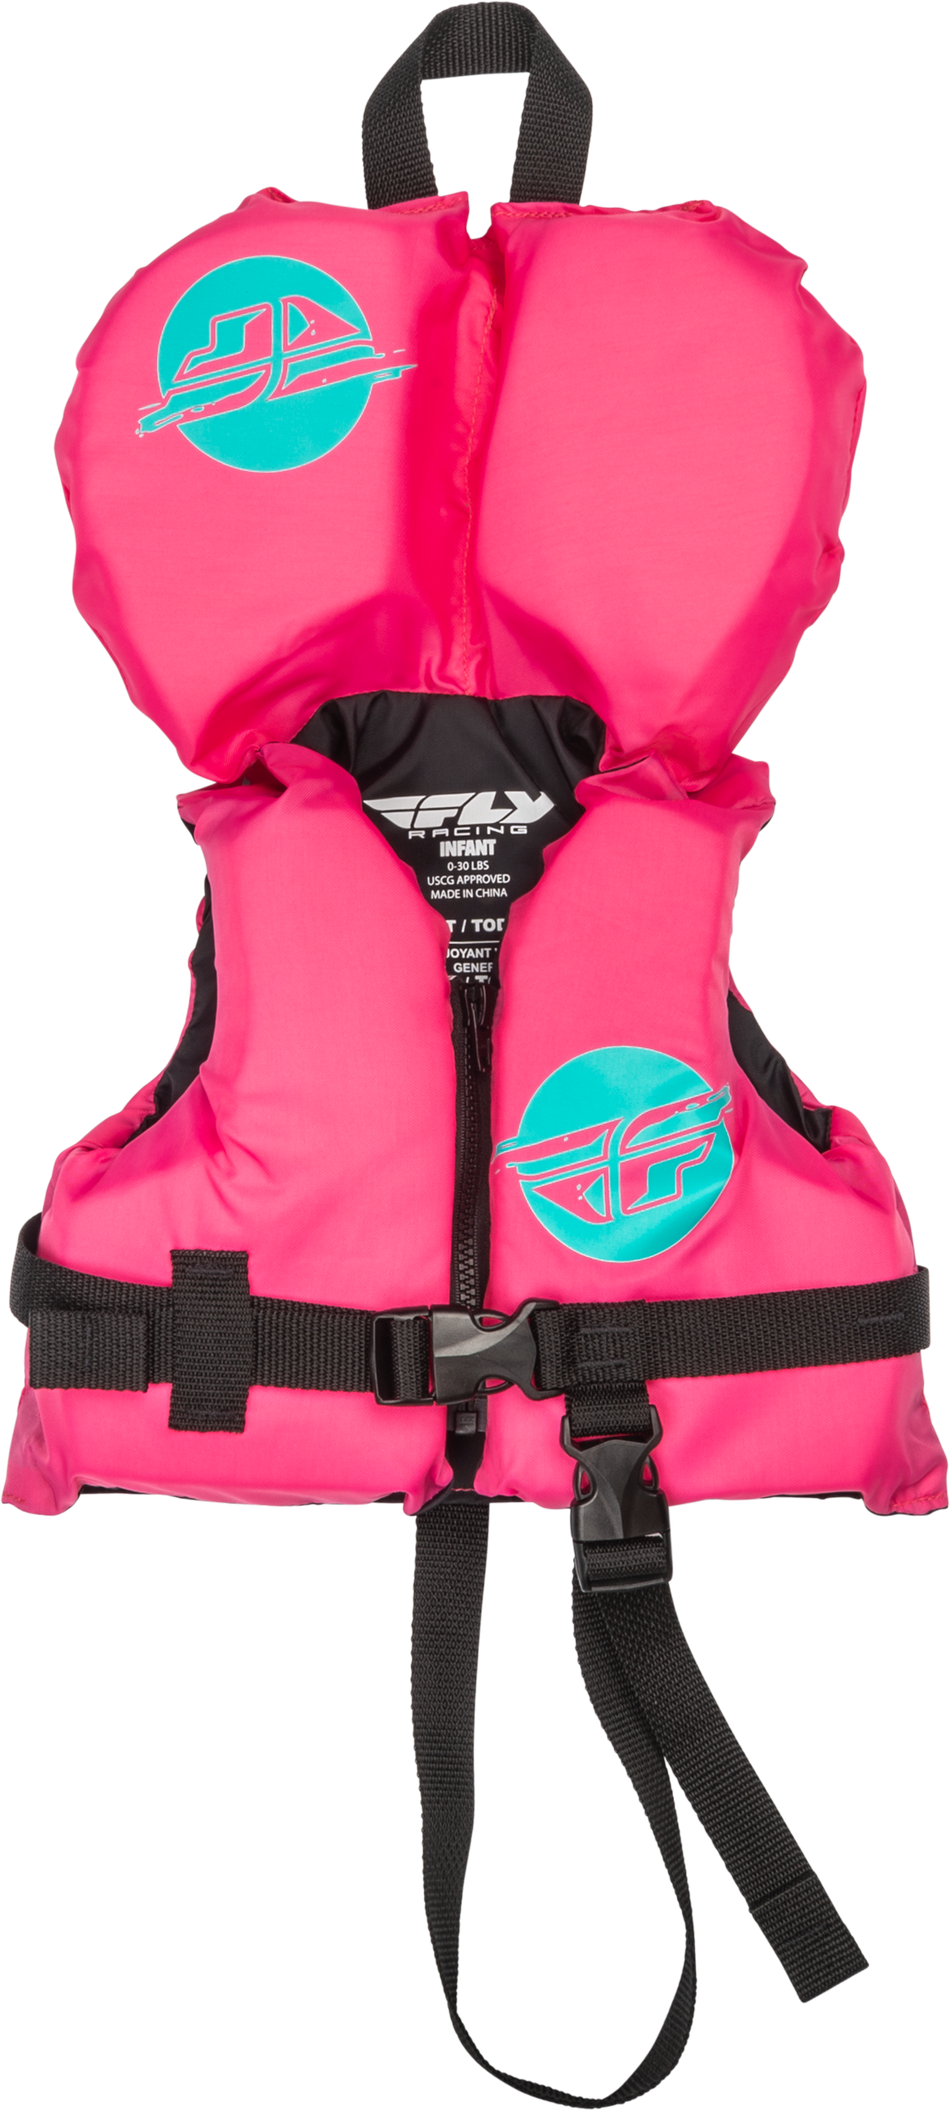 FLY RACING Infant Flotation Vest Neon Pink/Teal 221-30313